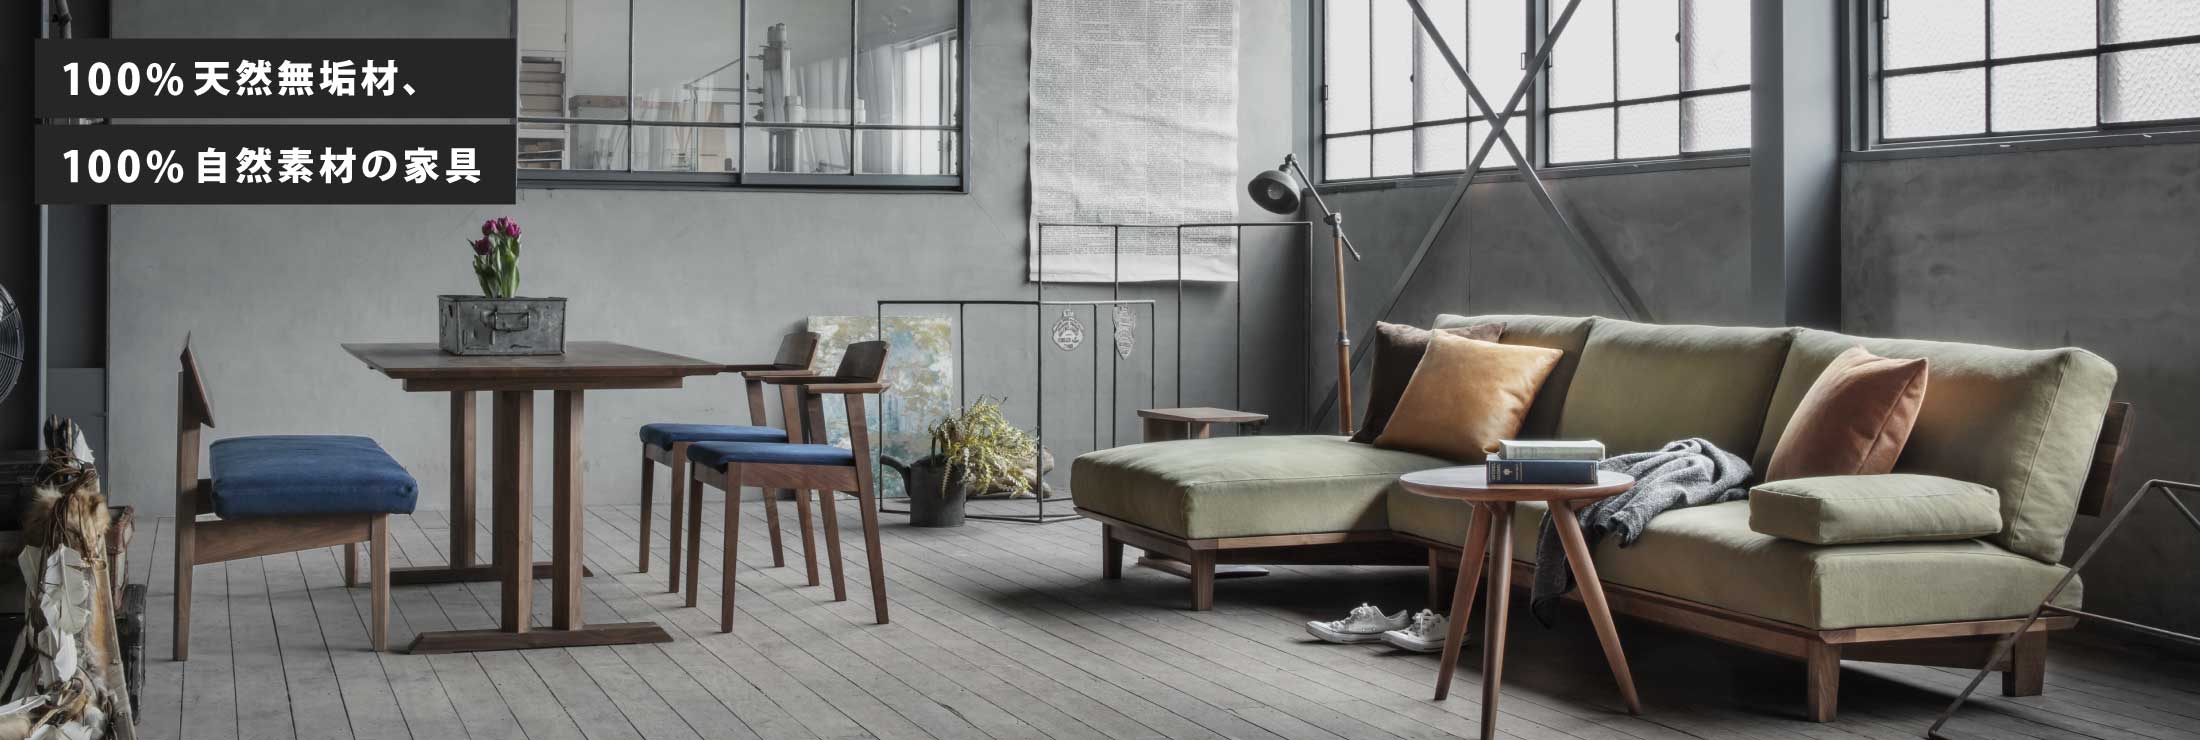 エッジの効いたデザインの家具で空間を統一しております。カウチソファとセットで置くことで、大人数で座ることや横になることも可能です。